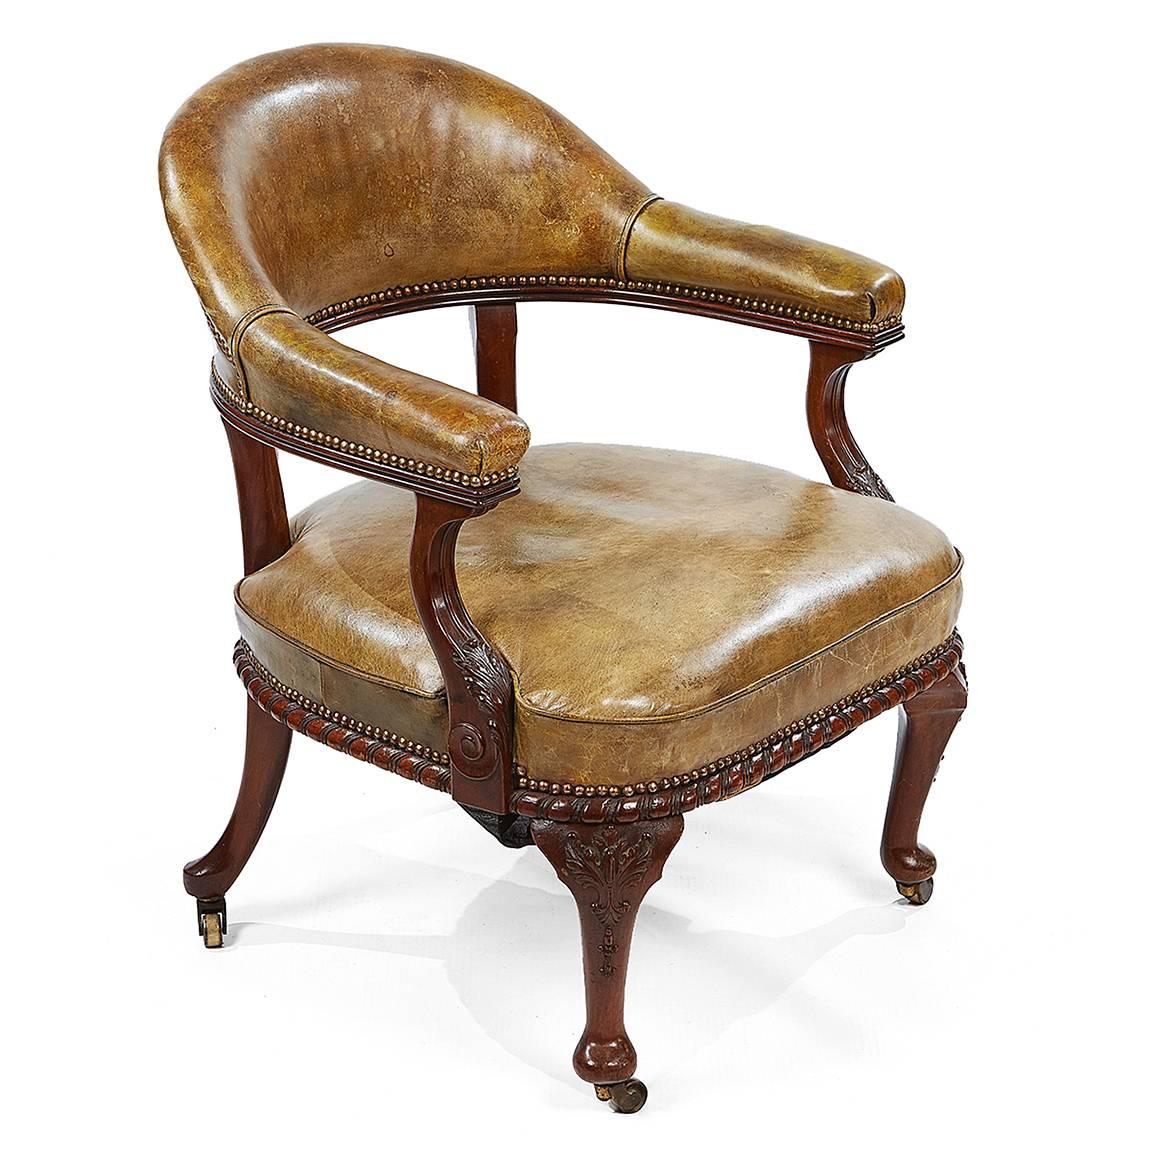 Ein Paar viktorianischer Mahagoni-Schreibtischstühle des 19. Jahrhunderts von Morrison & Co aus Edinburgh, jeweils mit grünem Leder bezogen, mit geschnitzten und geformten Rahmen auf Messingrollen. Beide Stühle sind gestempelt und